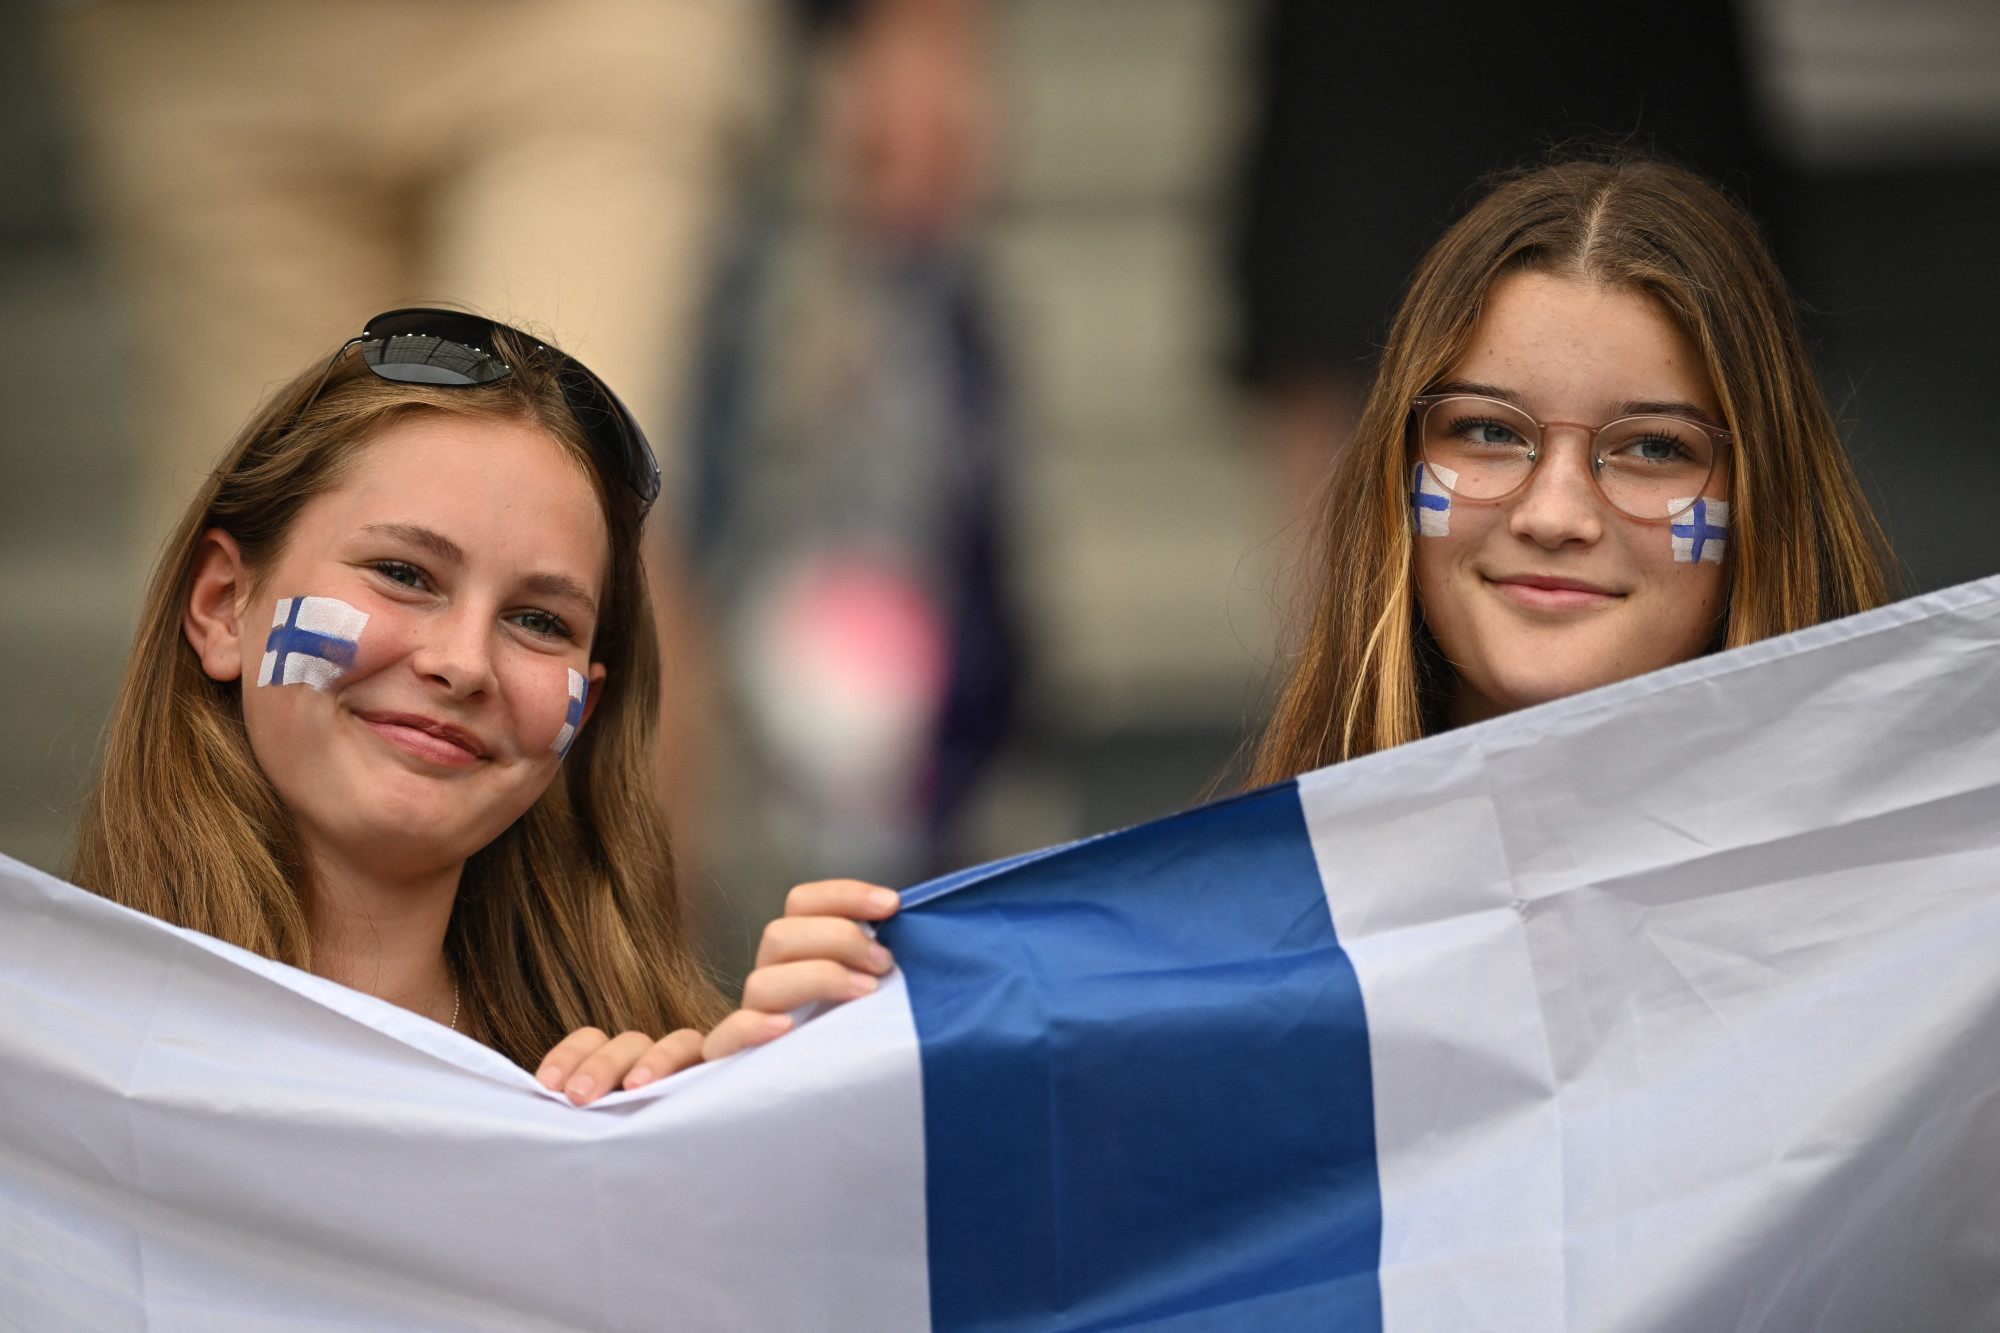 Mitől boldogabb egy finn, mint egy magyar?